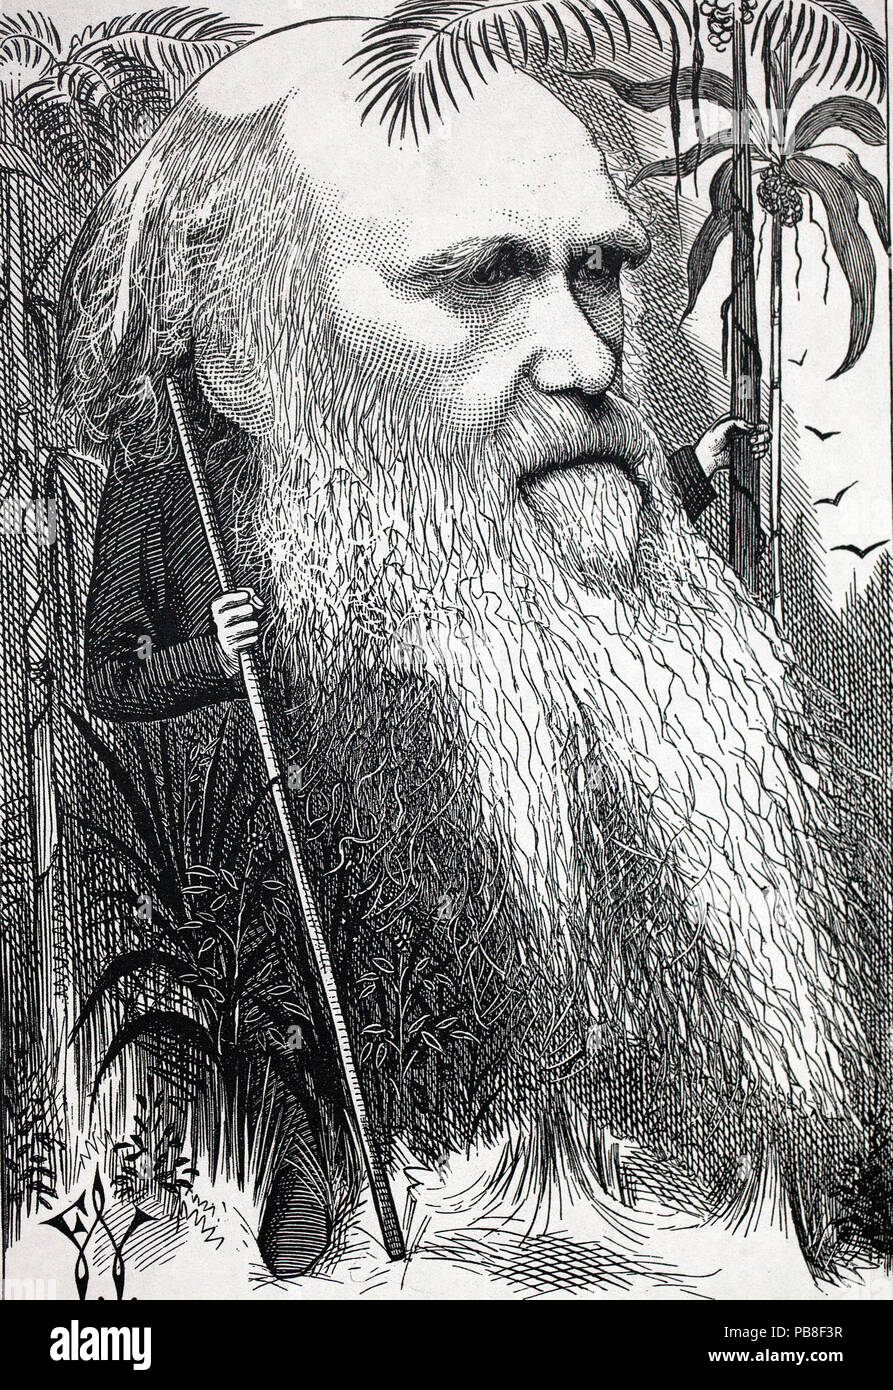 Darwin en el bosque - histórico caricatura de Charles Darwin, titulada 